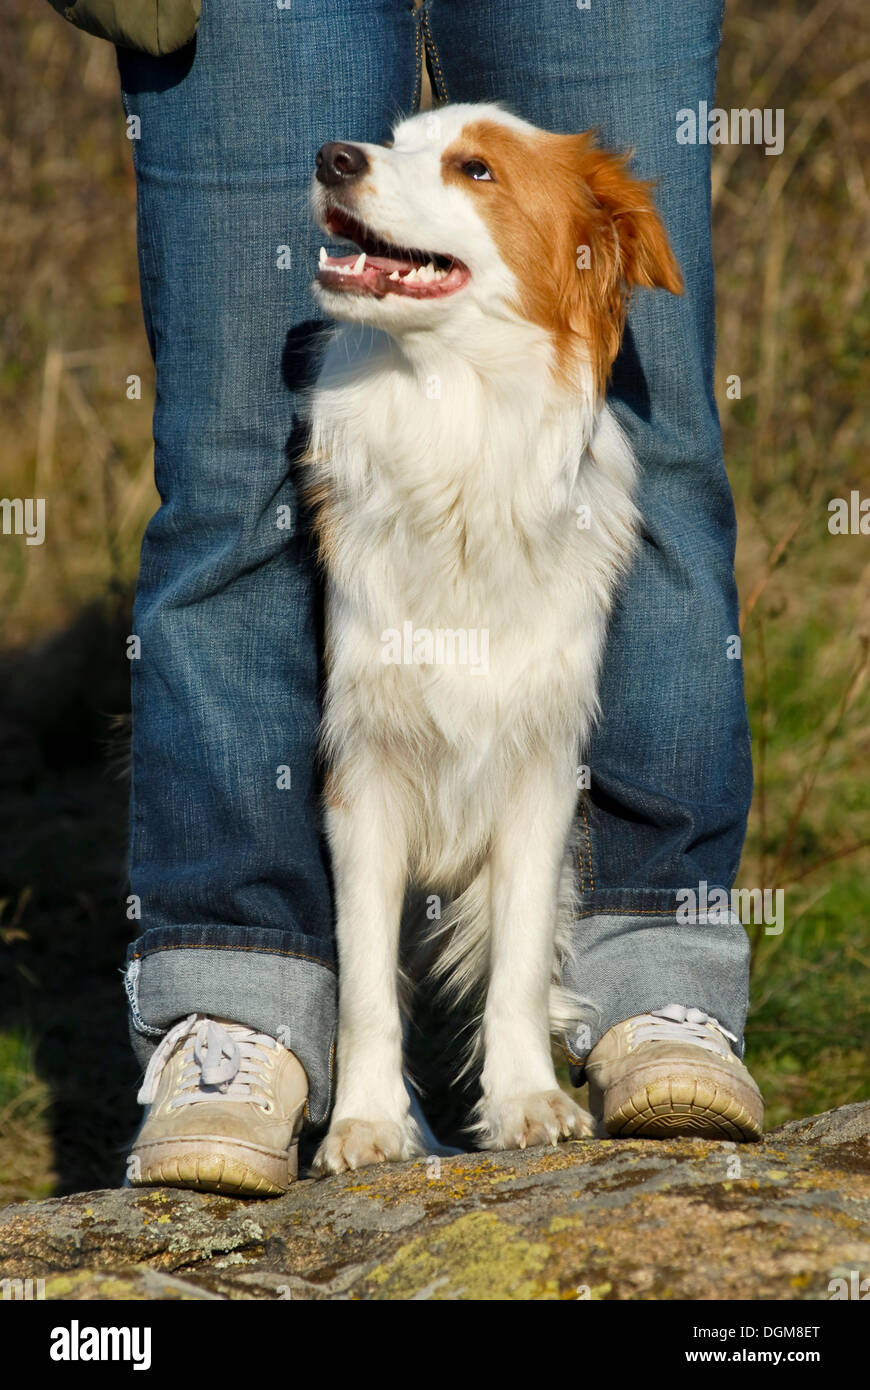 Border Collie standing between human legs Stock Photo